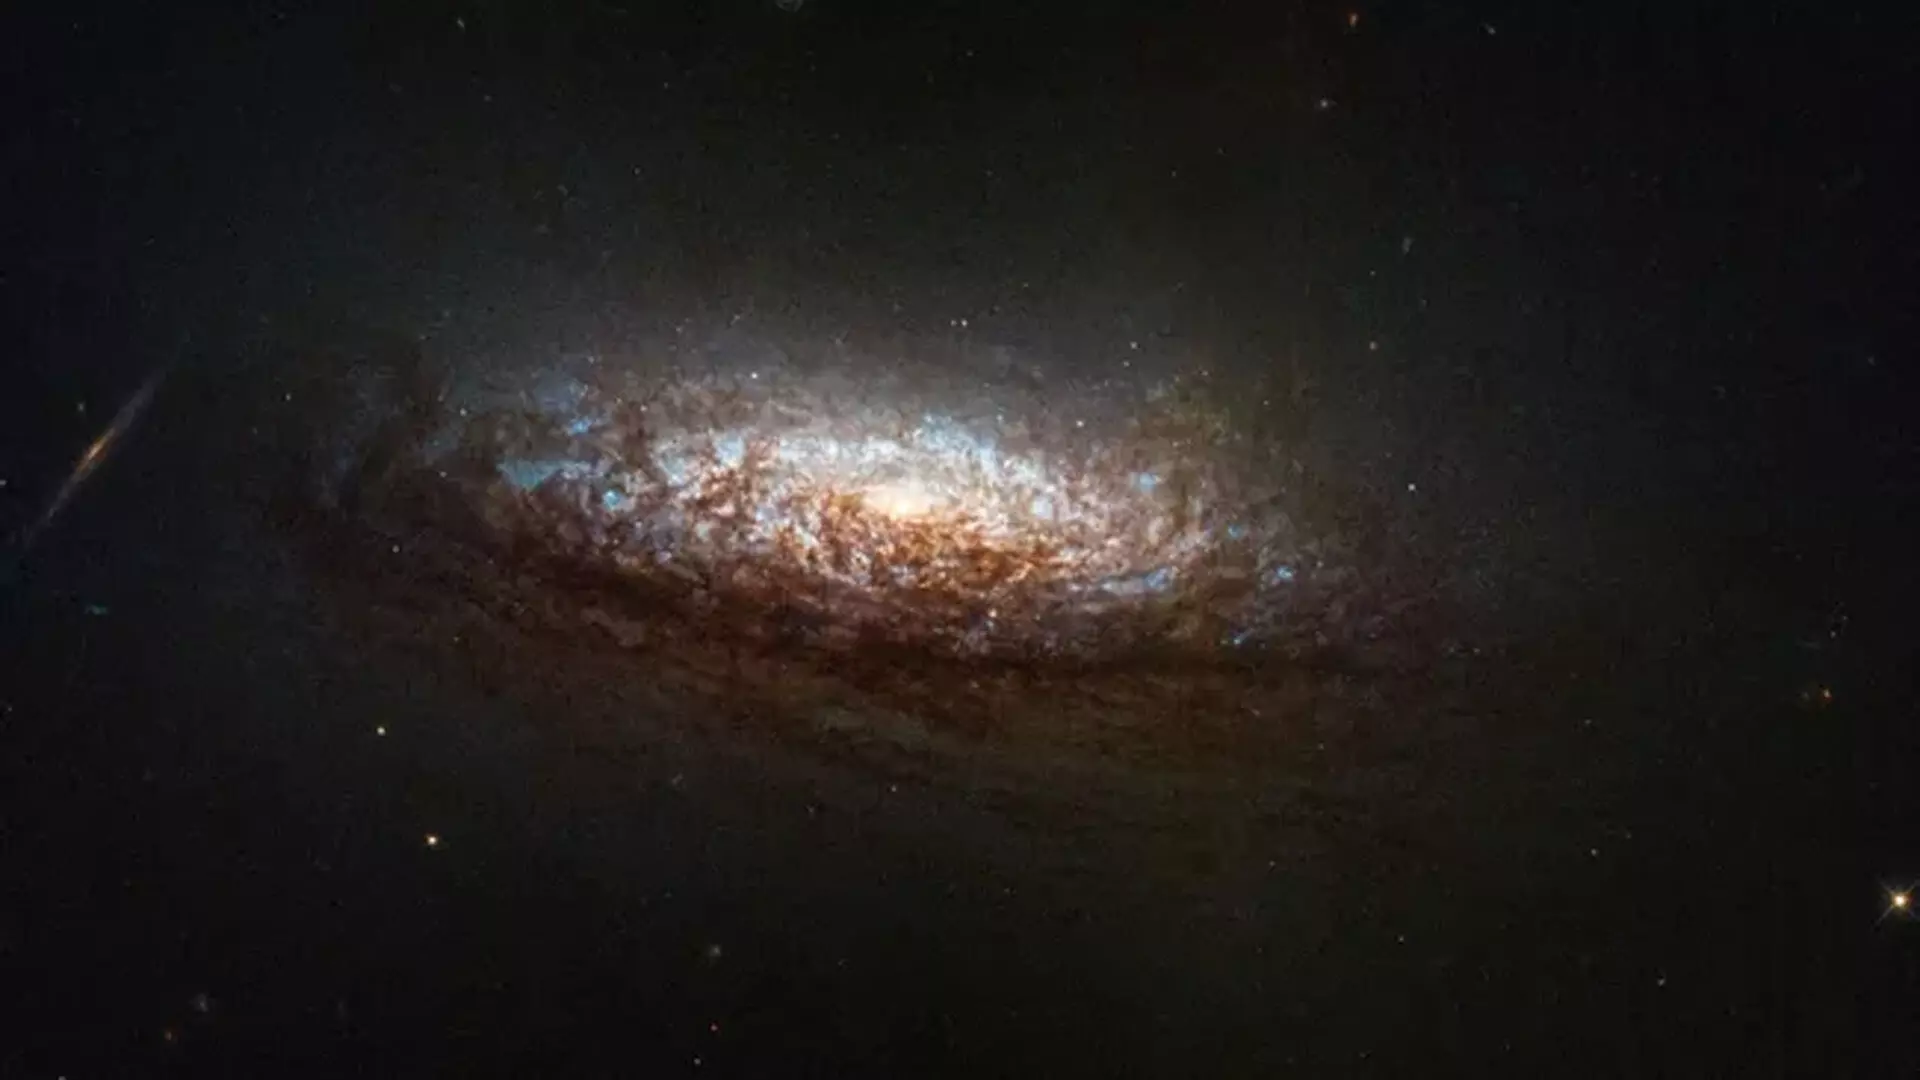 Hubble ने निकटवर्ती आकाशगंगा की उत्कृष्ट छवि के साथ पुनः जीवन प्राप्त किया